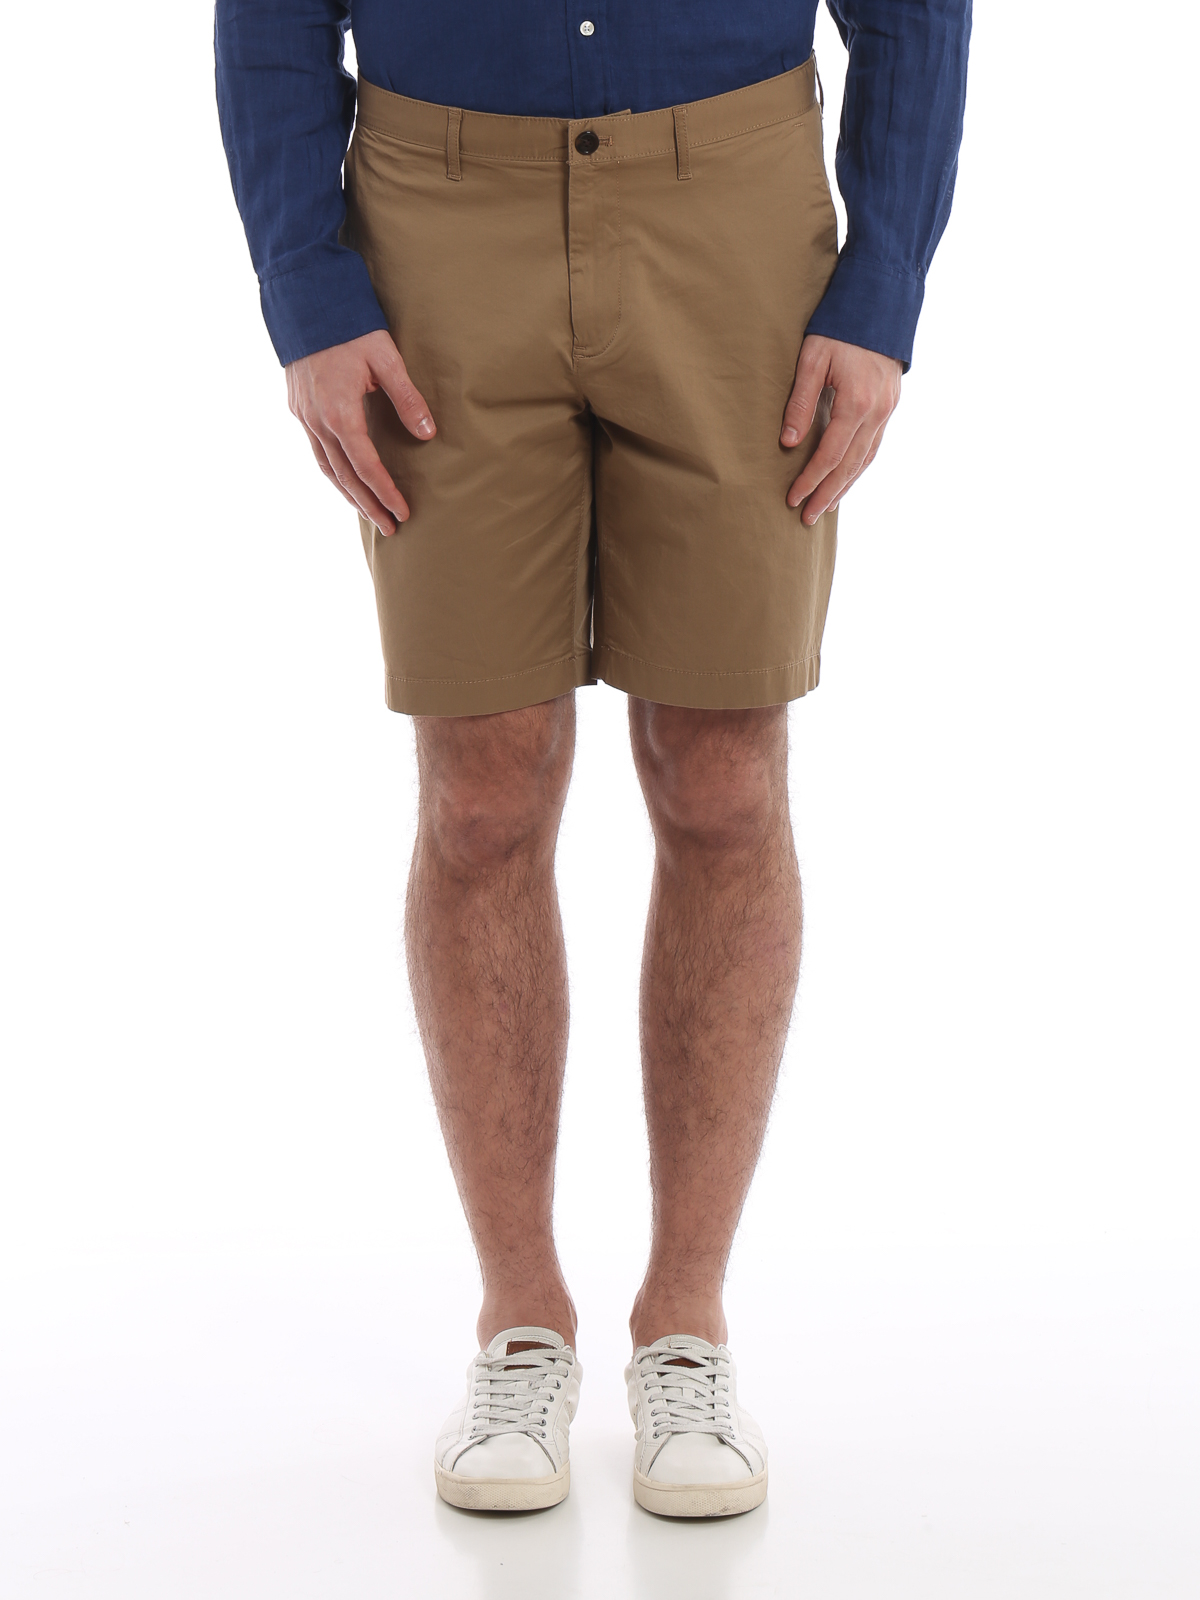 Trousers Shorts Michael Kors - Khaki stretch cotton short pants -  CS93CSK4JJ250